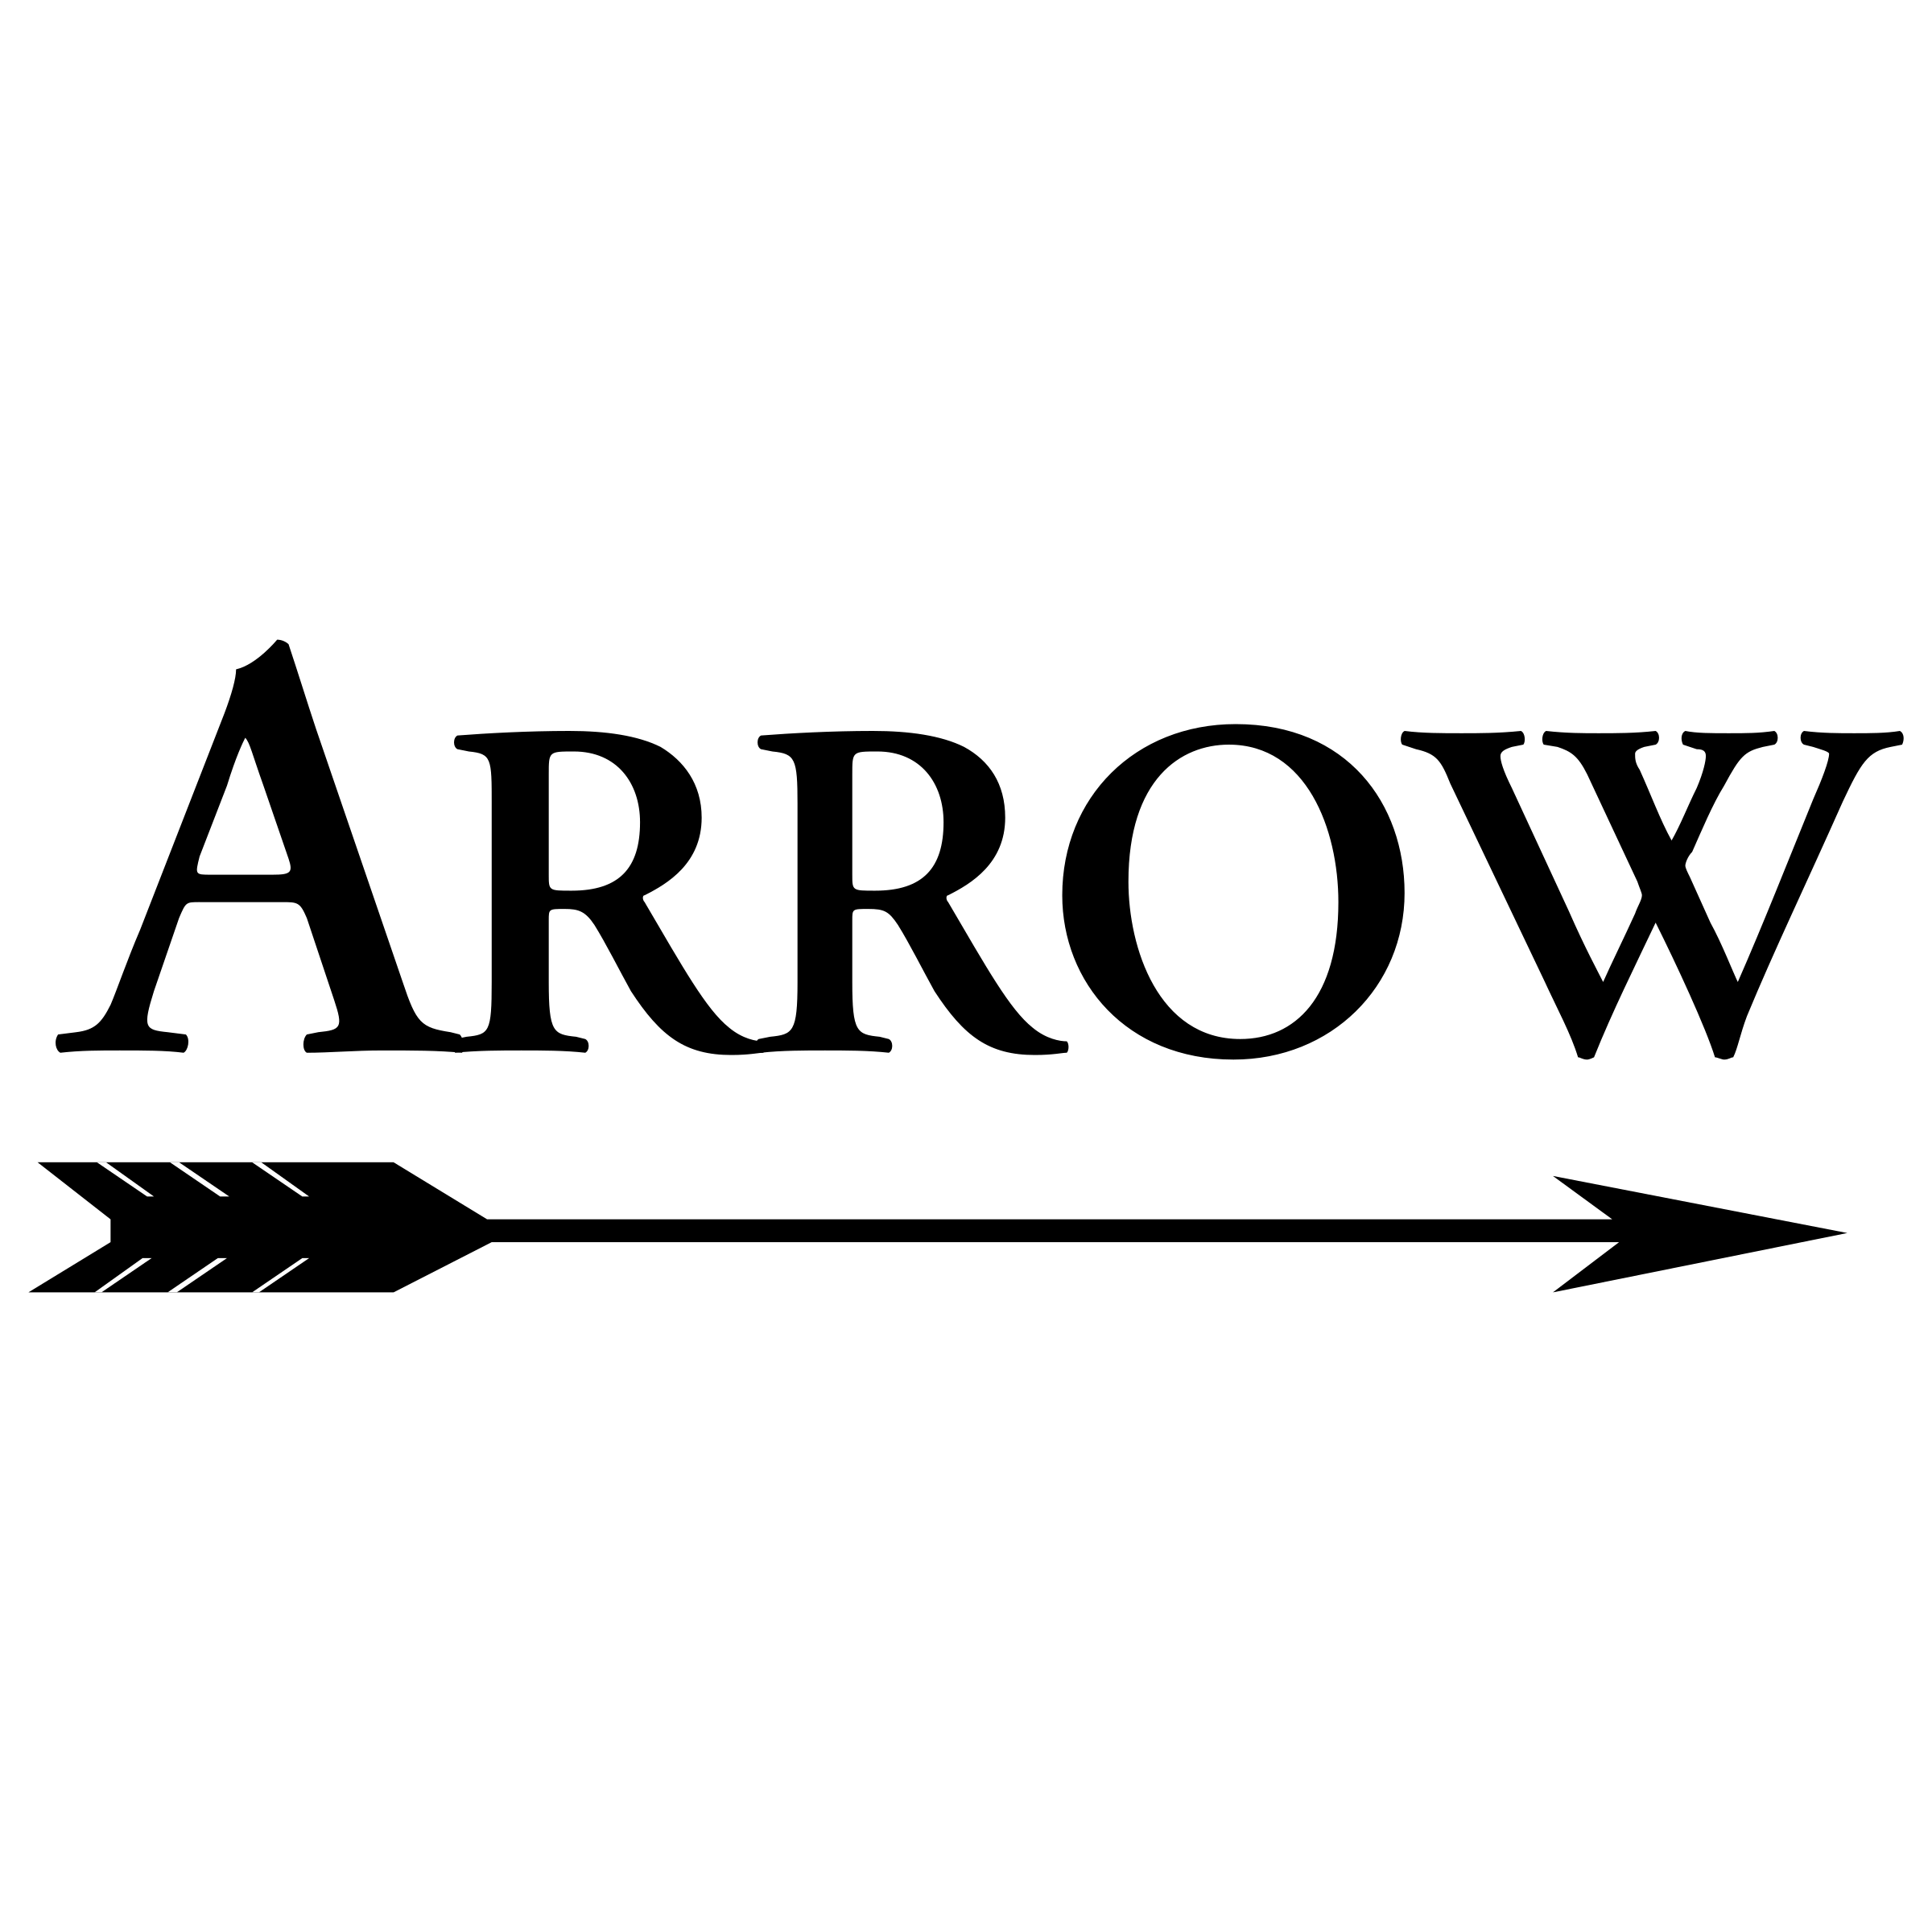 Arrow Logo - Arrow 02 Logo PNG Transparent & SVG Vector - Freebie Supply